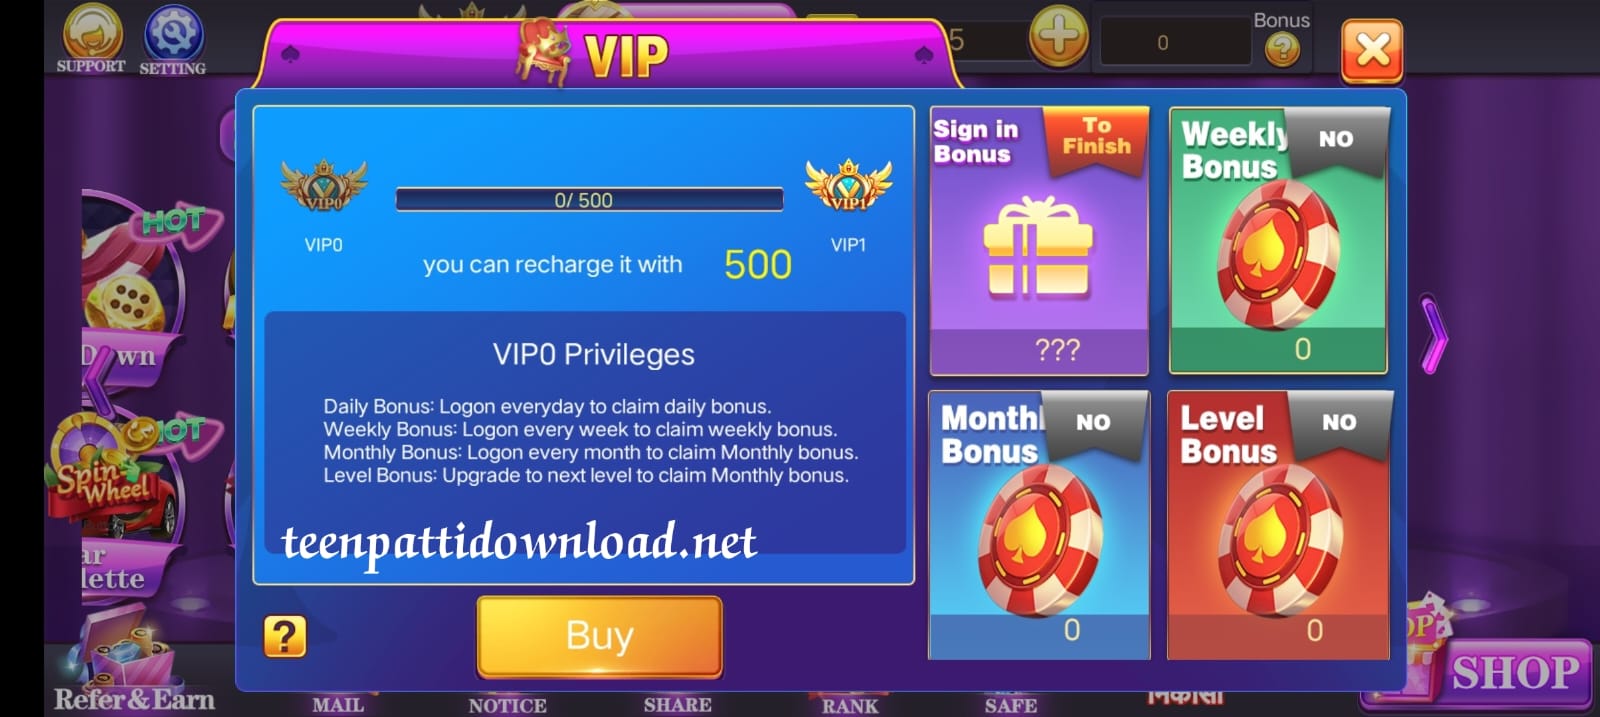 VIP Program In Teen Patti Club App